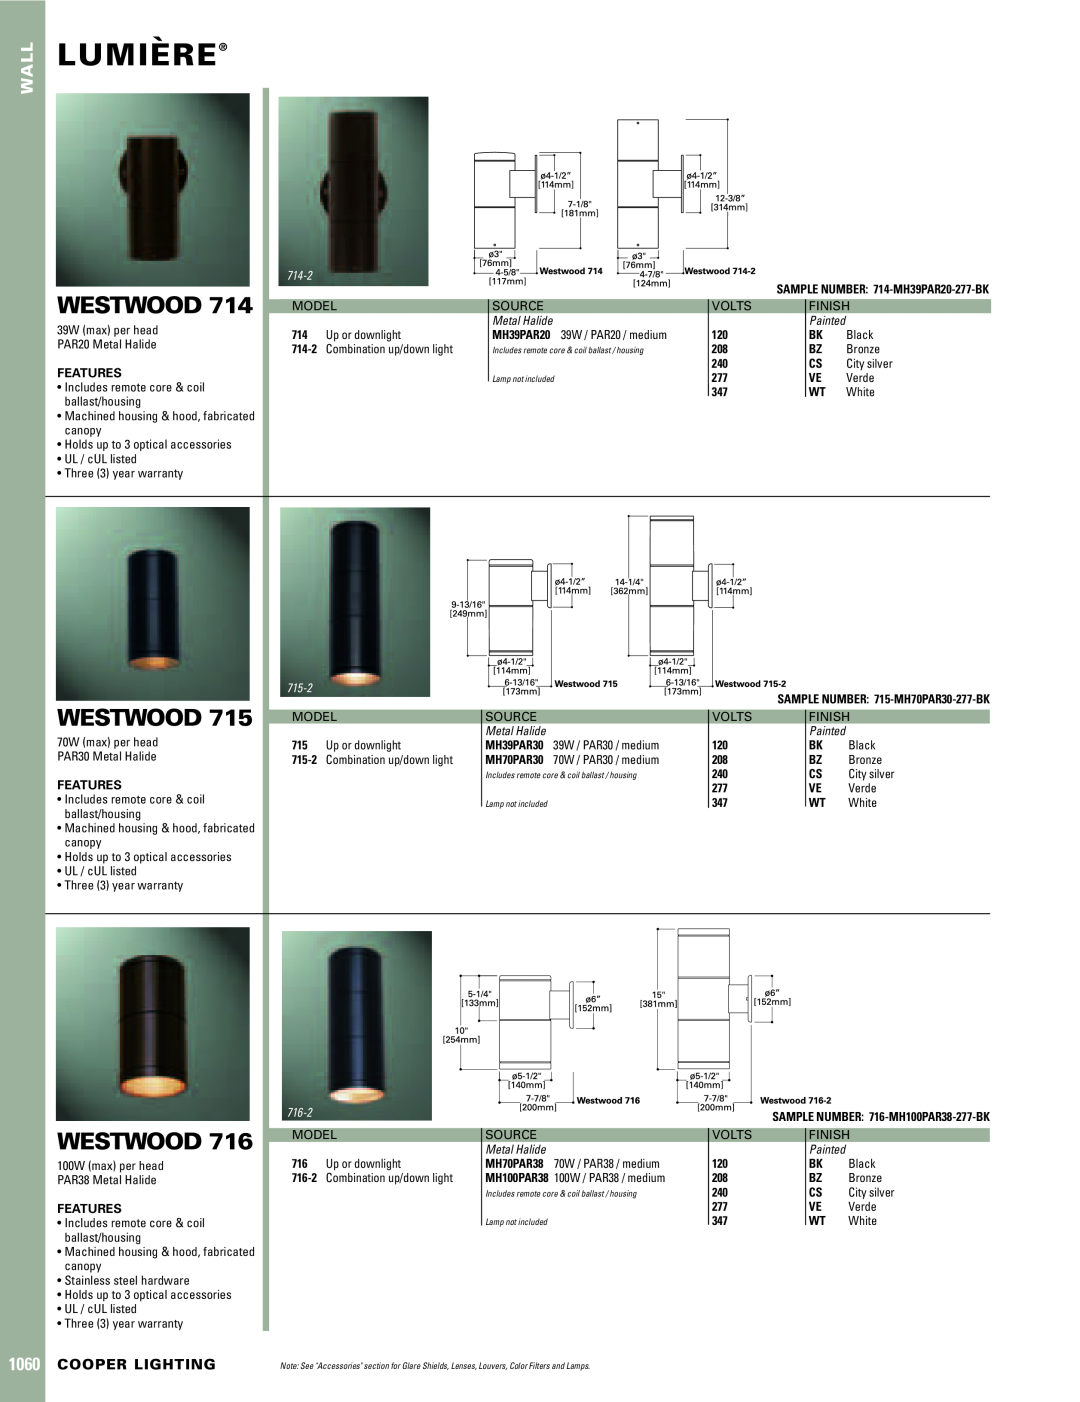 Cooper Lighting warranty Lumiere`, Westwood, Wall, Cooper Lighting, 714-2, Metal Halide, 715-2, 716-2 